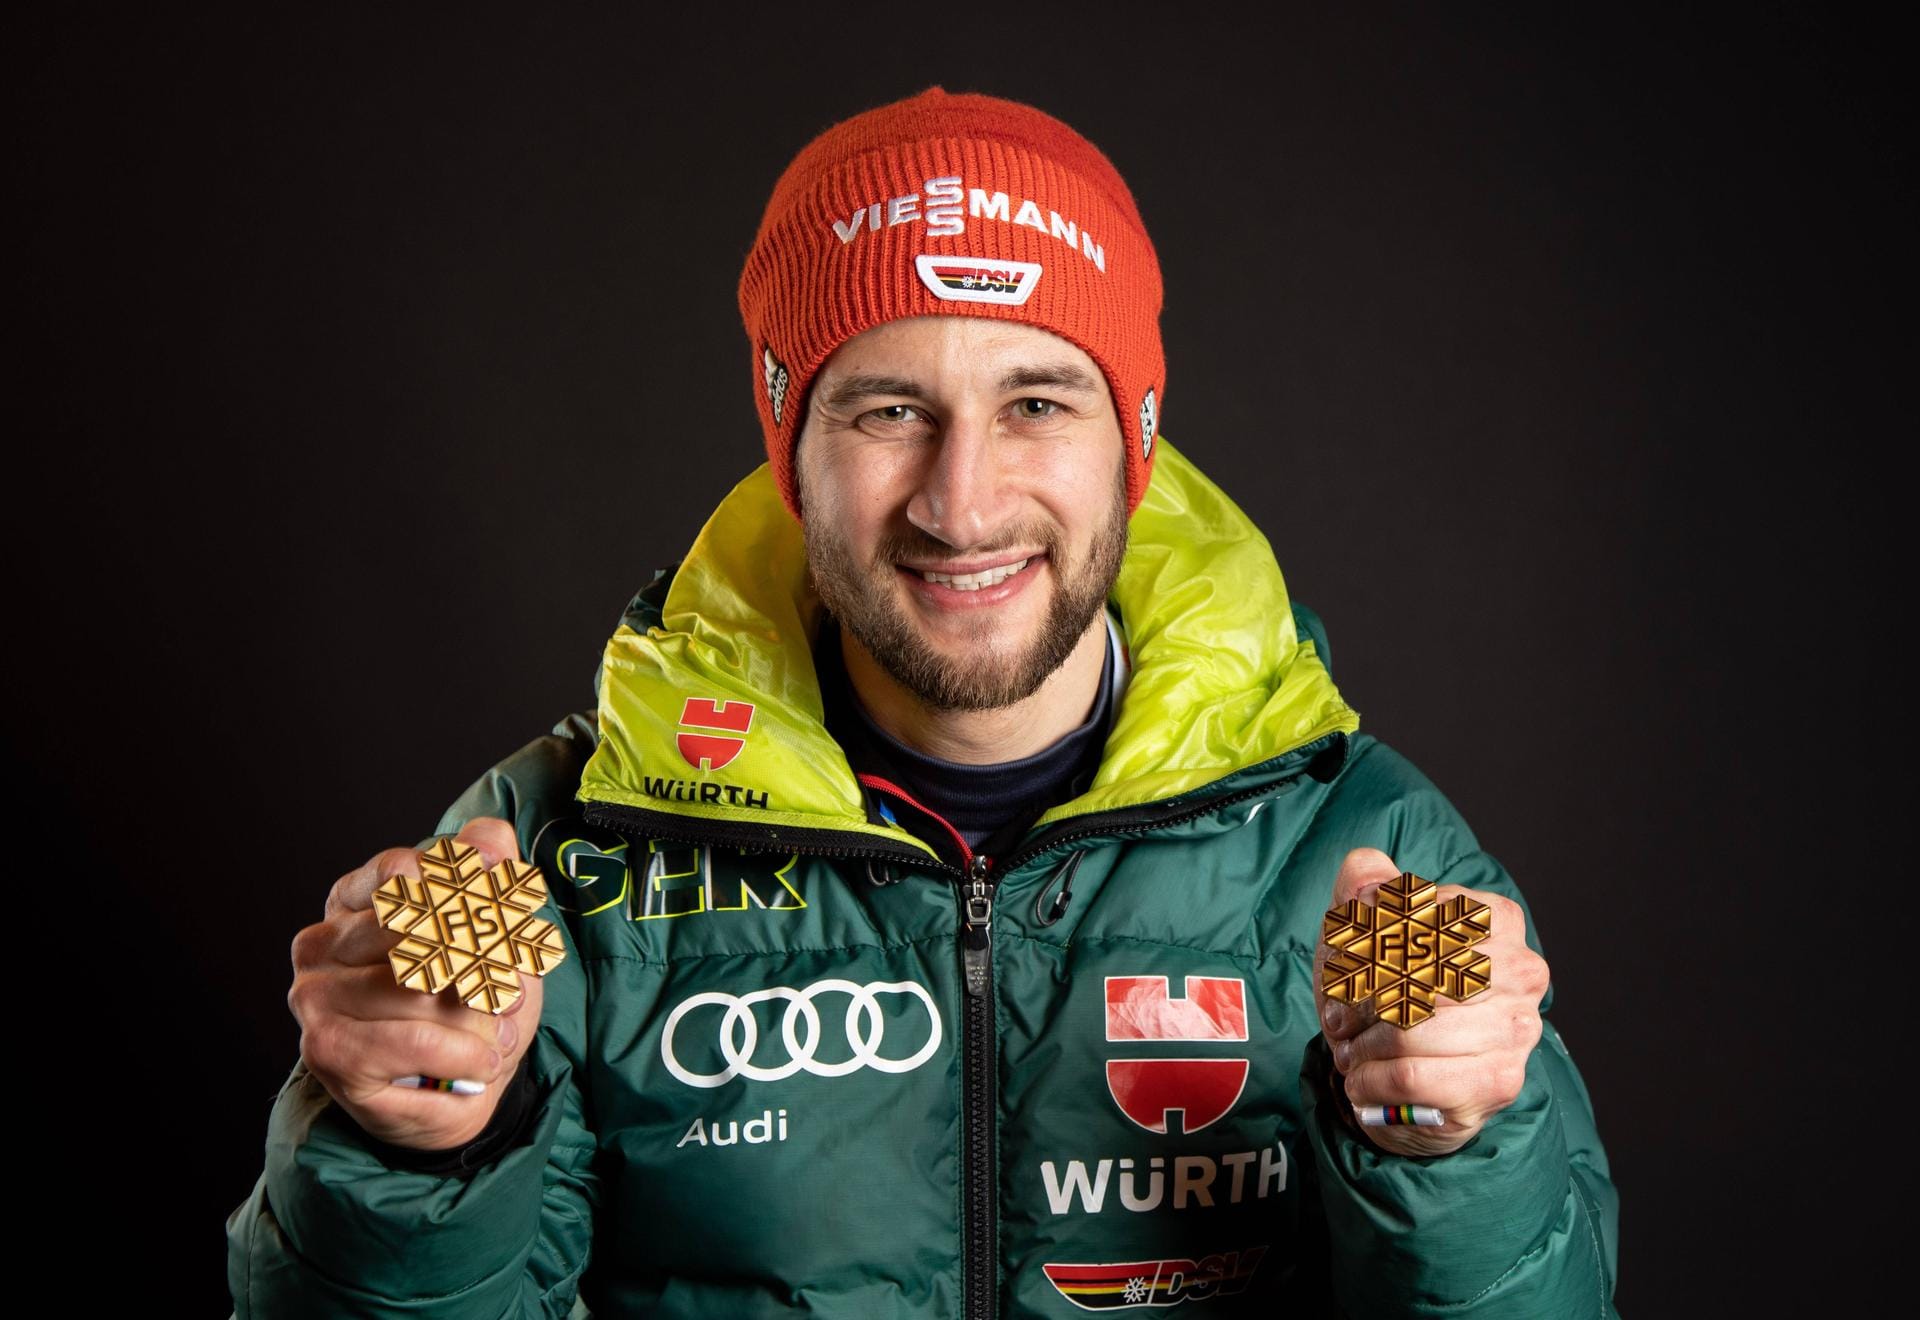 Skispringer Markus Eisenbichler